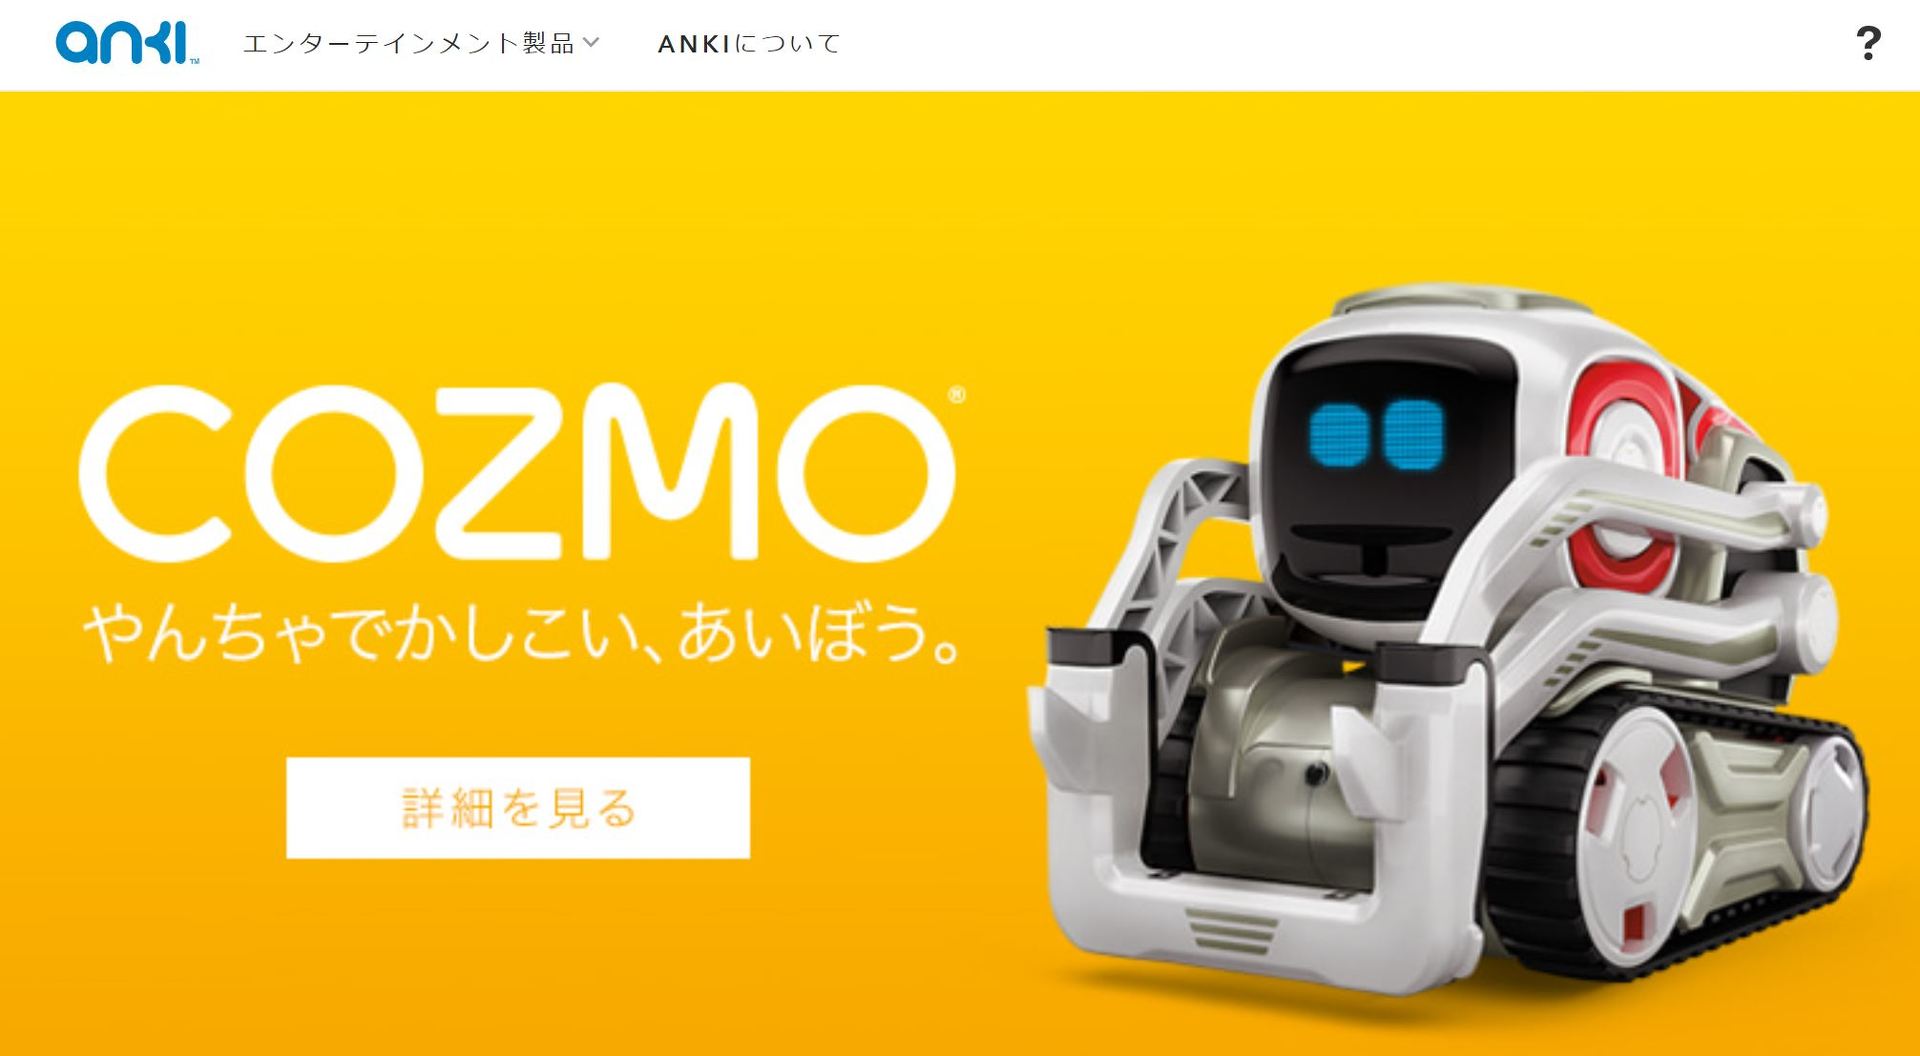 かわいいAIロボット「COZMO」のAnki、倒産か──Recode報道 - ITmedia NEWS